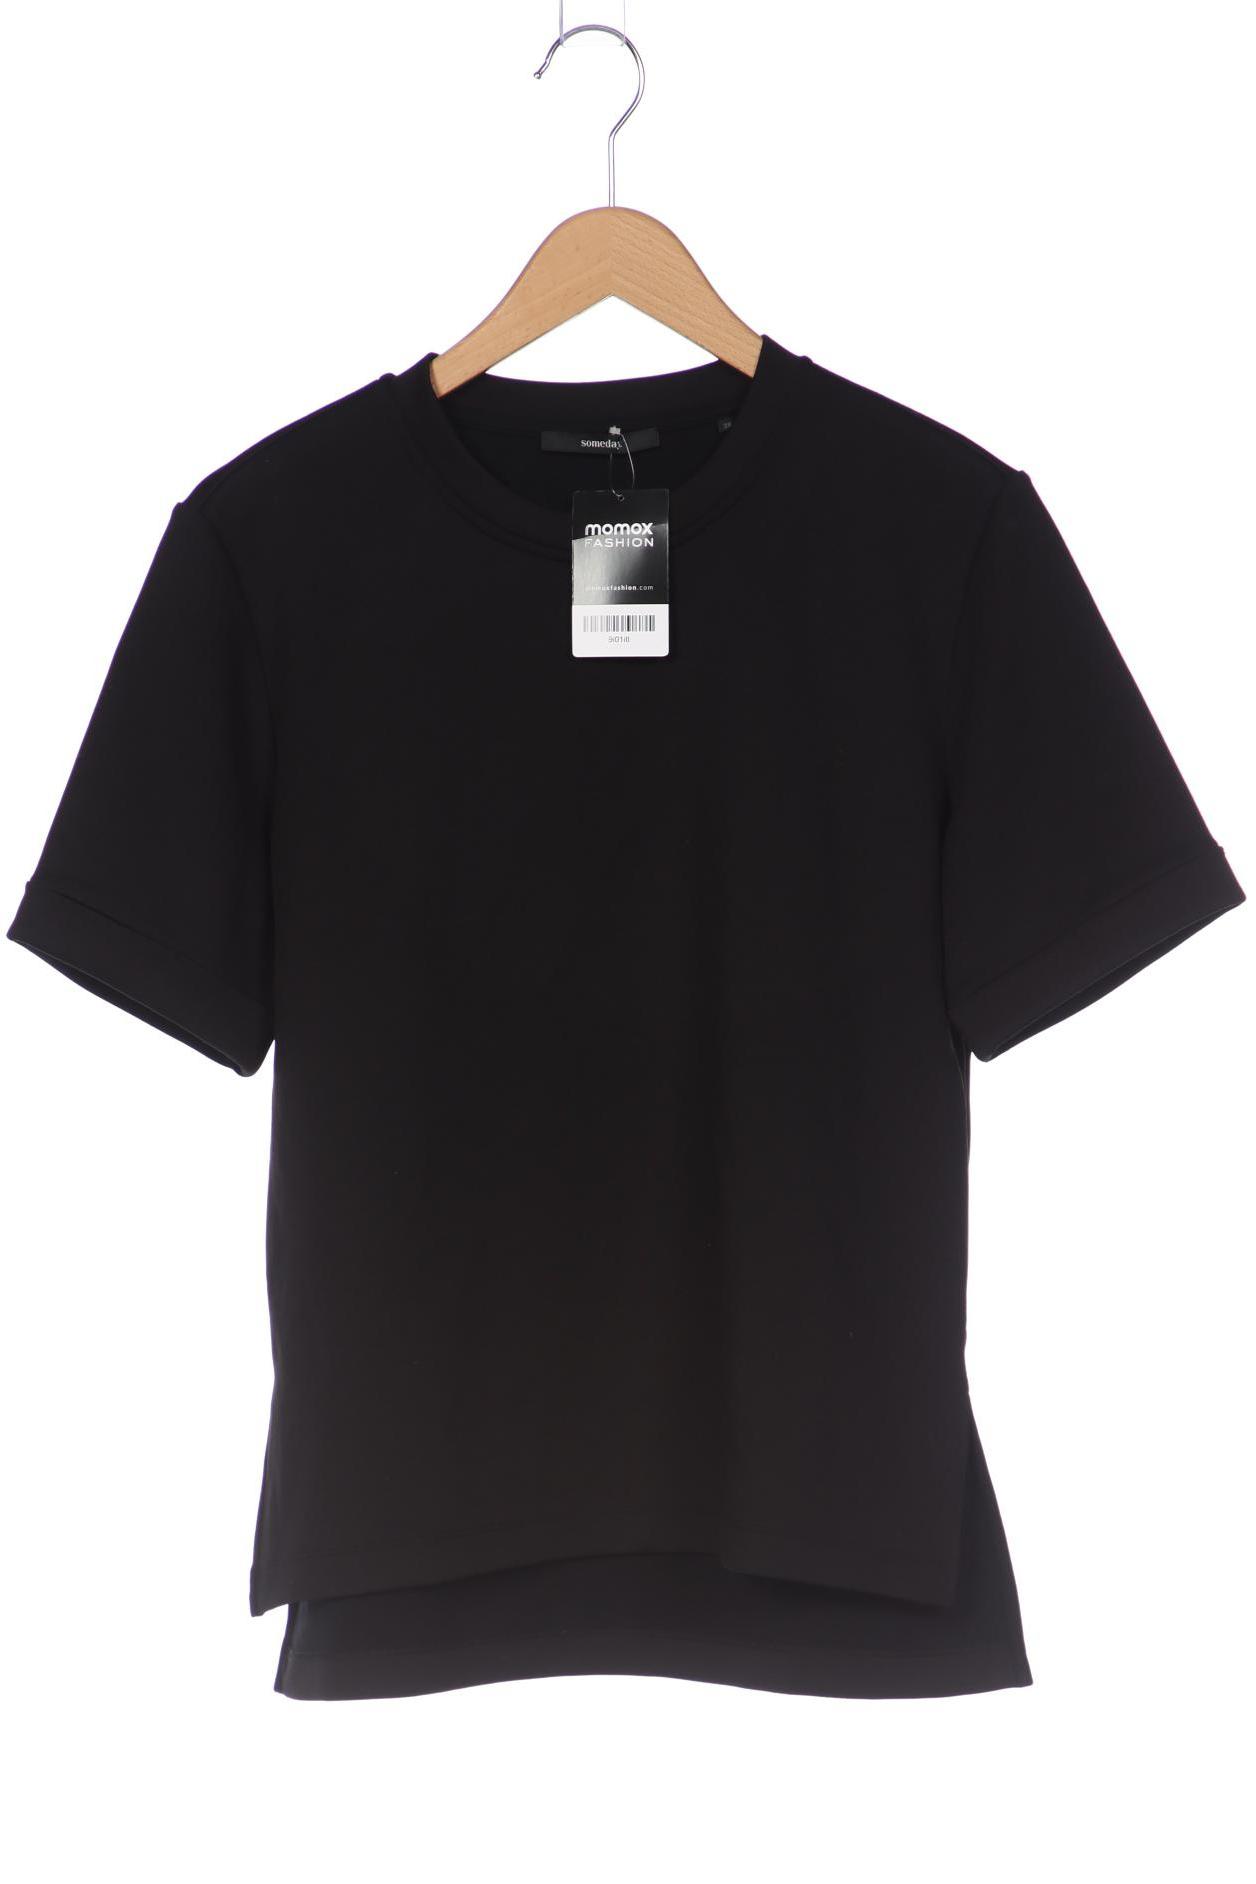 someday. Damen T-Shirt, schwarz, Gr. 38 von someday.